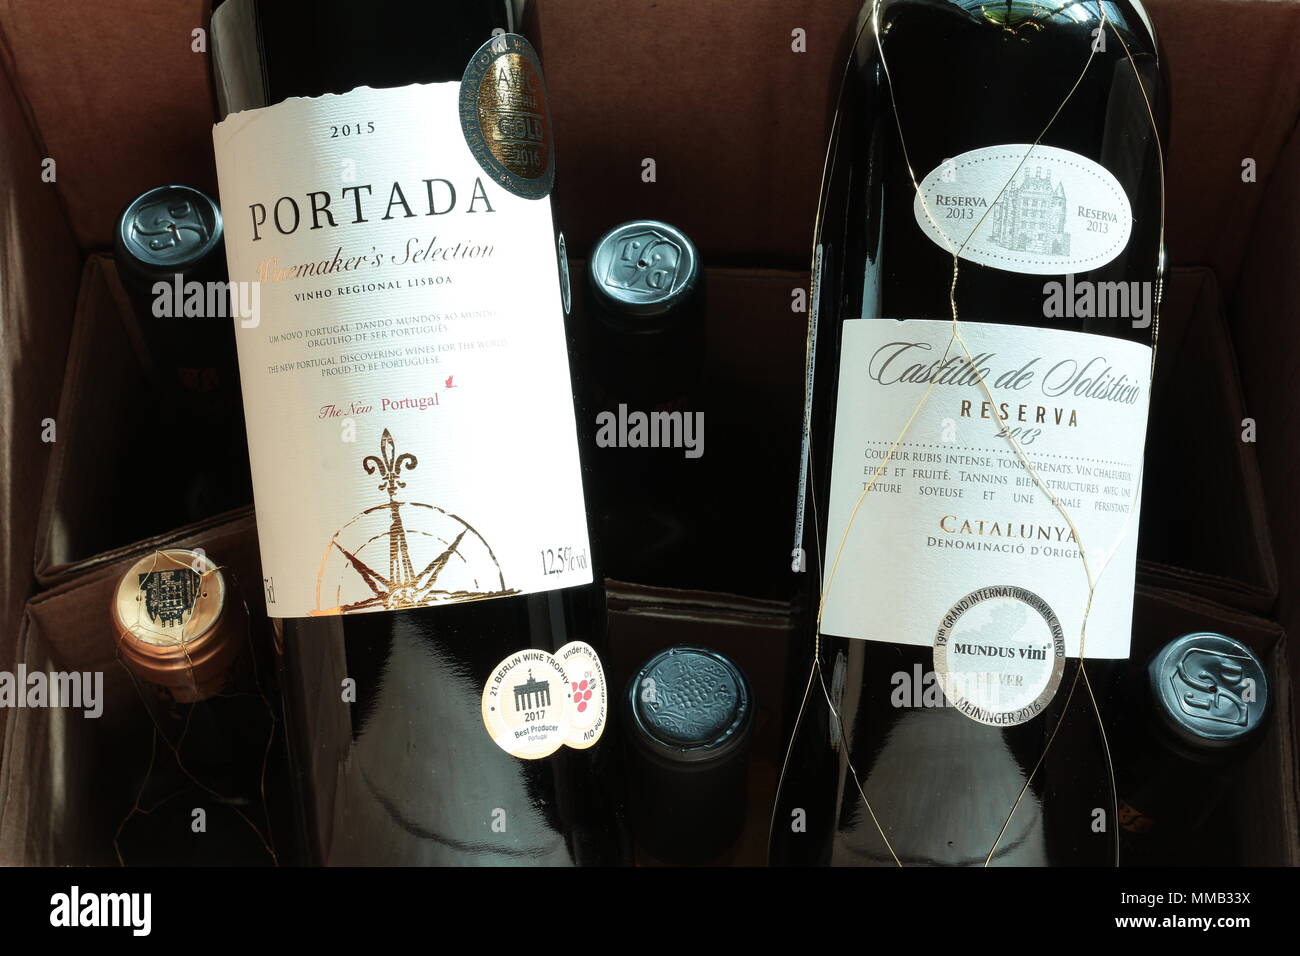 Las botellas de vino en caja de cartón. Etiquetas de botella de vino. Portada vino portugués. Vinos premiados. Entrega del club de vino. Foto de stock